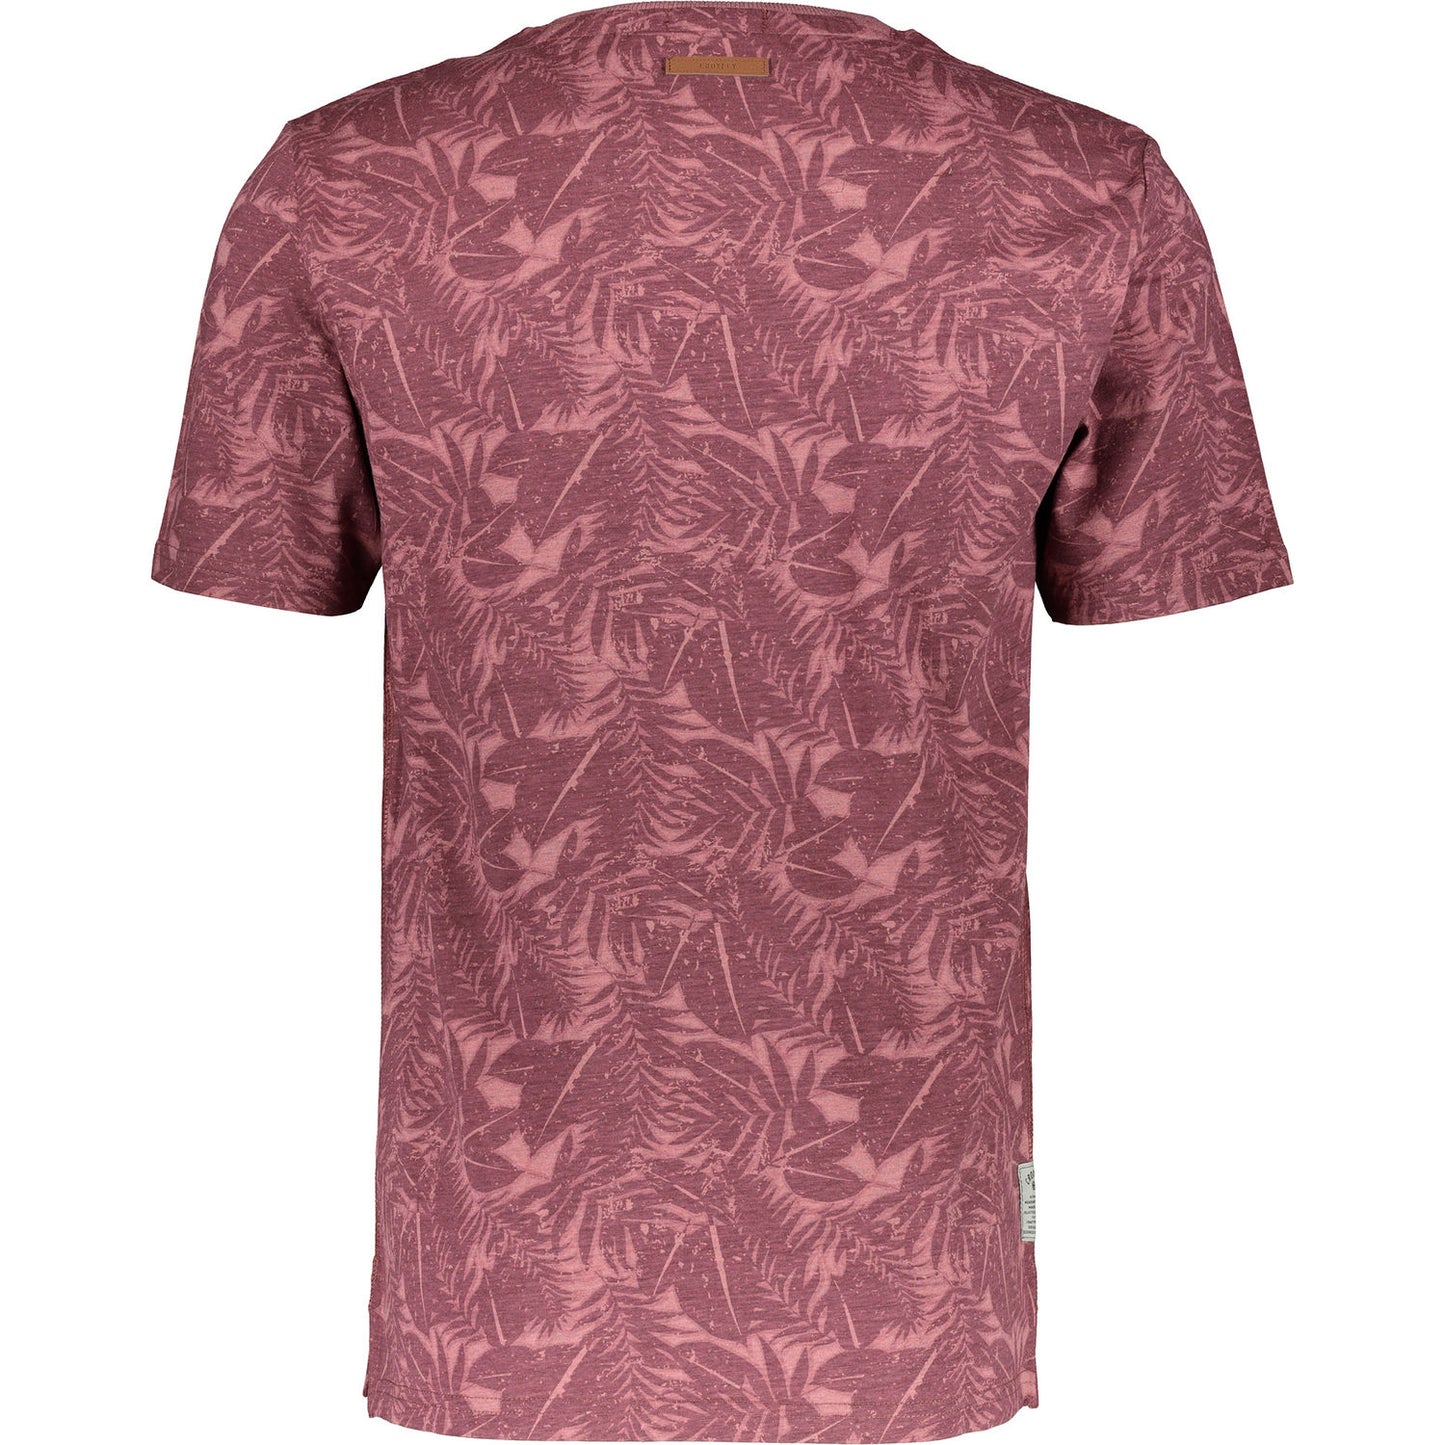 Croxley - Lichfield T-Shirt - LabelledUp.com